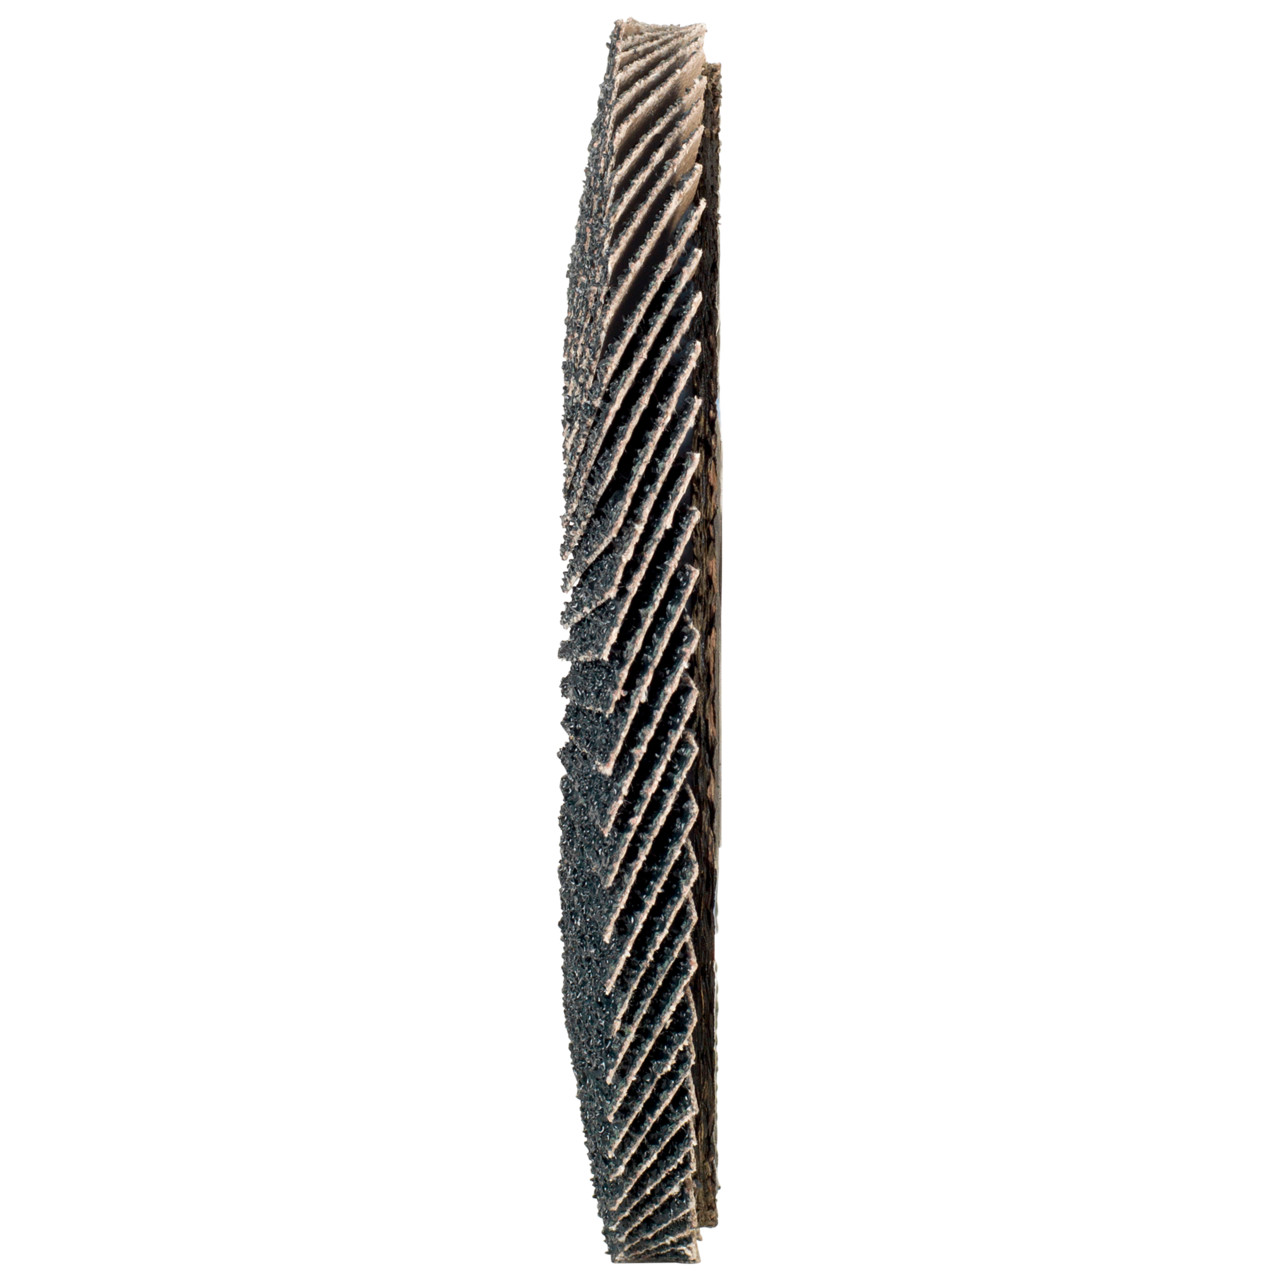 Tyrolit Arandela de seguridad dentada DxH 115x22,2 2en1 para acero y acero inoxidable, P40, forma: 28A - versión recta (versión con cuerpo de soporte de fibra de vidrio), Art. 668686